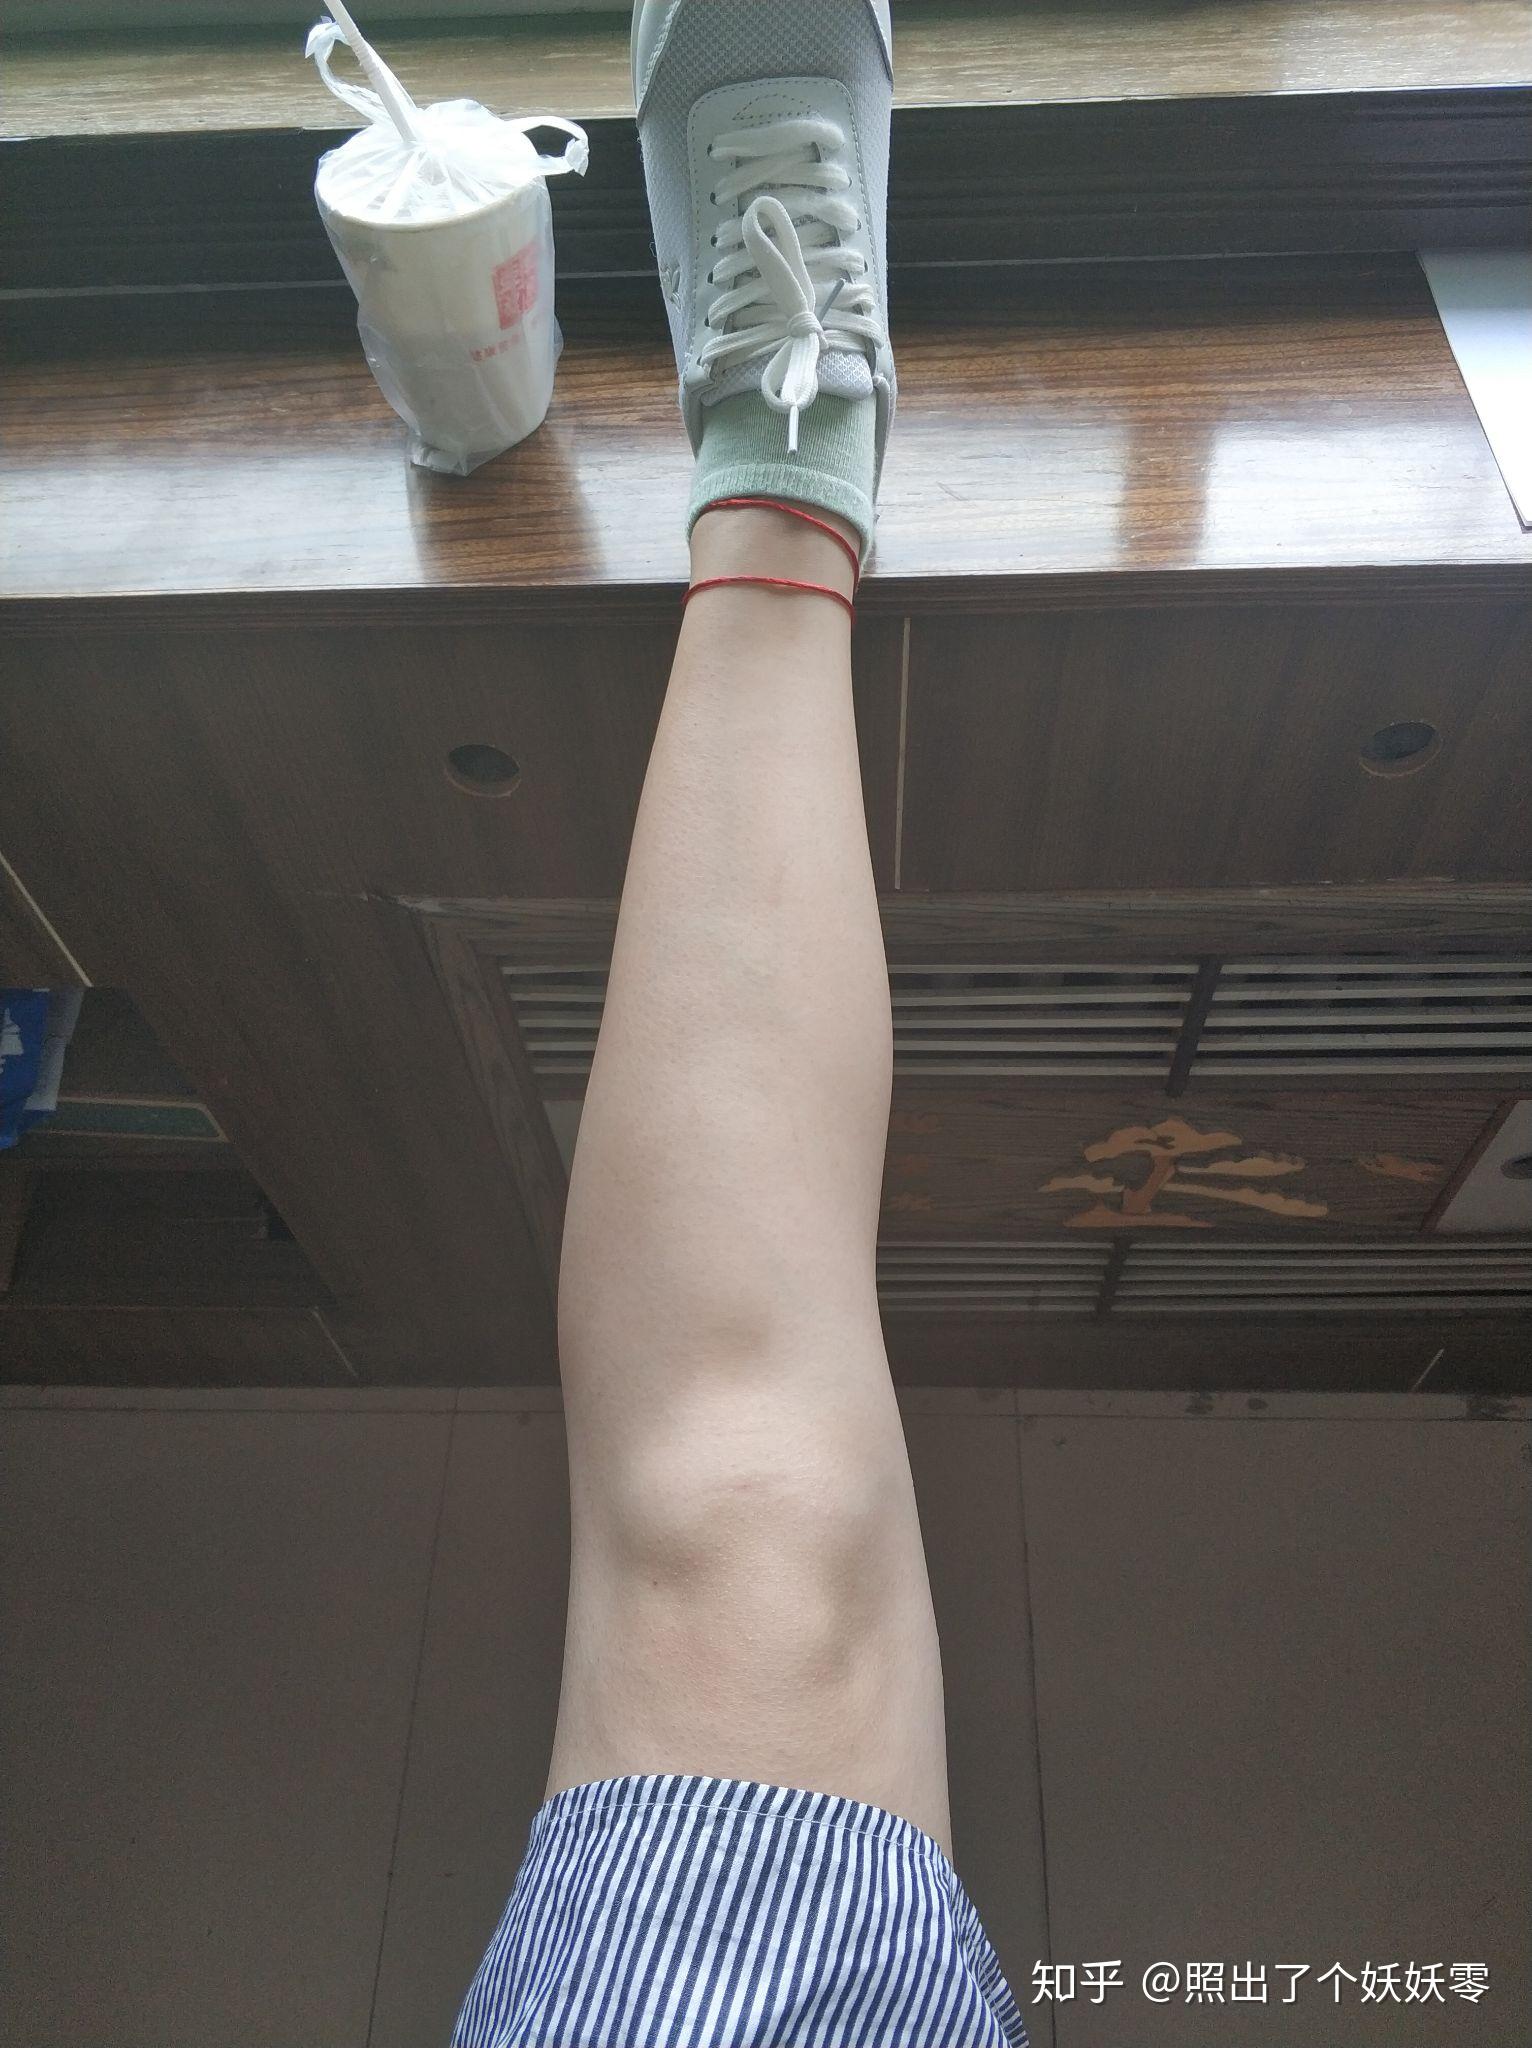 这个腿型是xo腿型还是腿不直该怎么改善呢